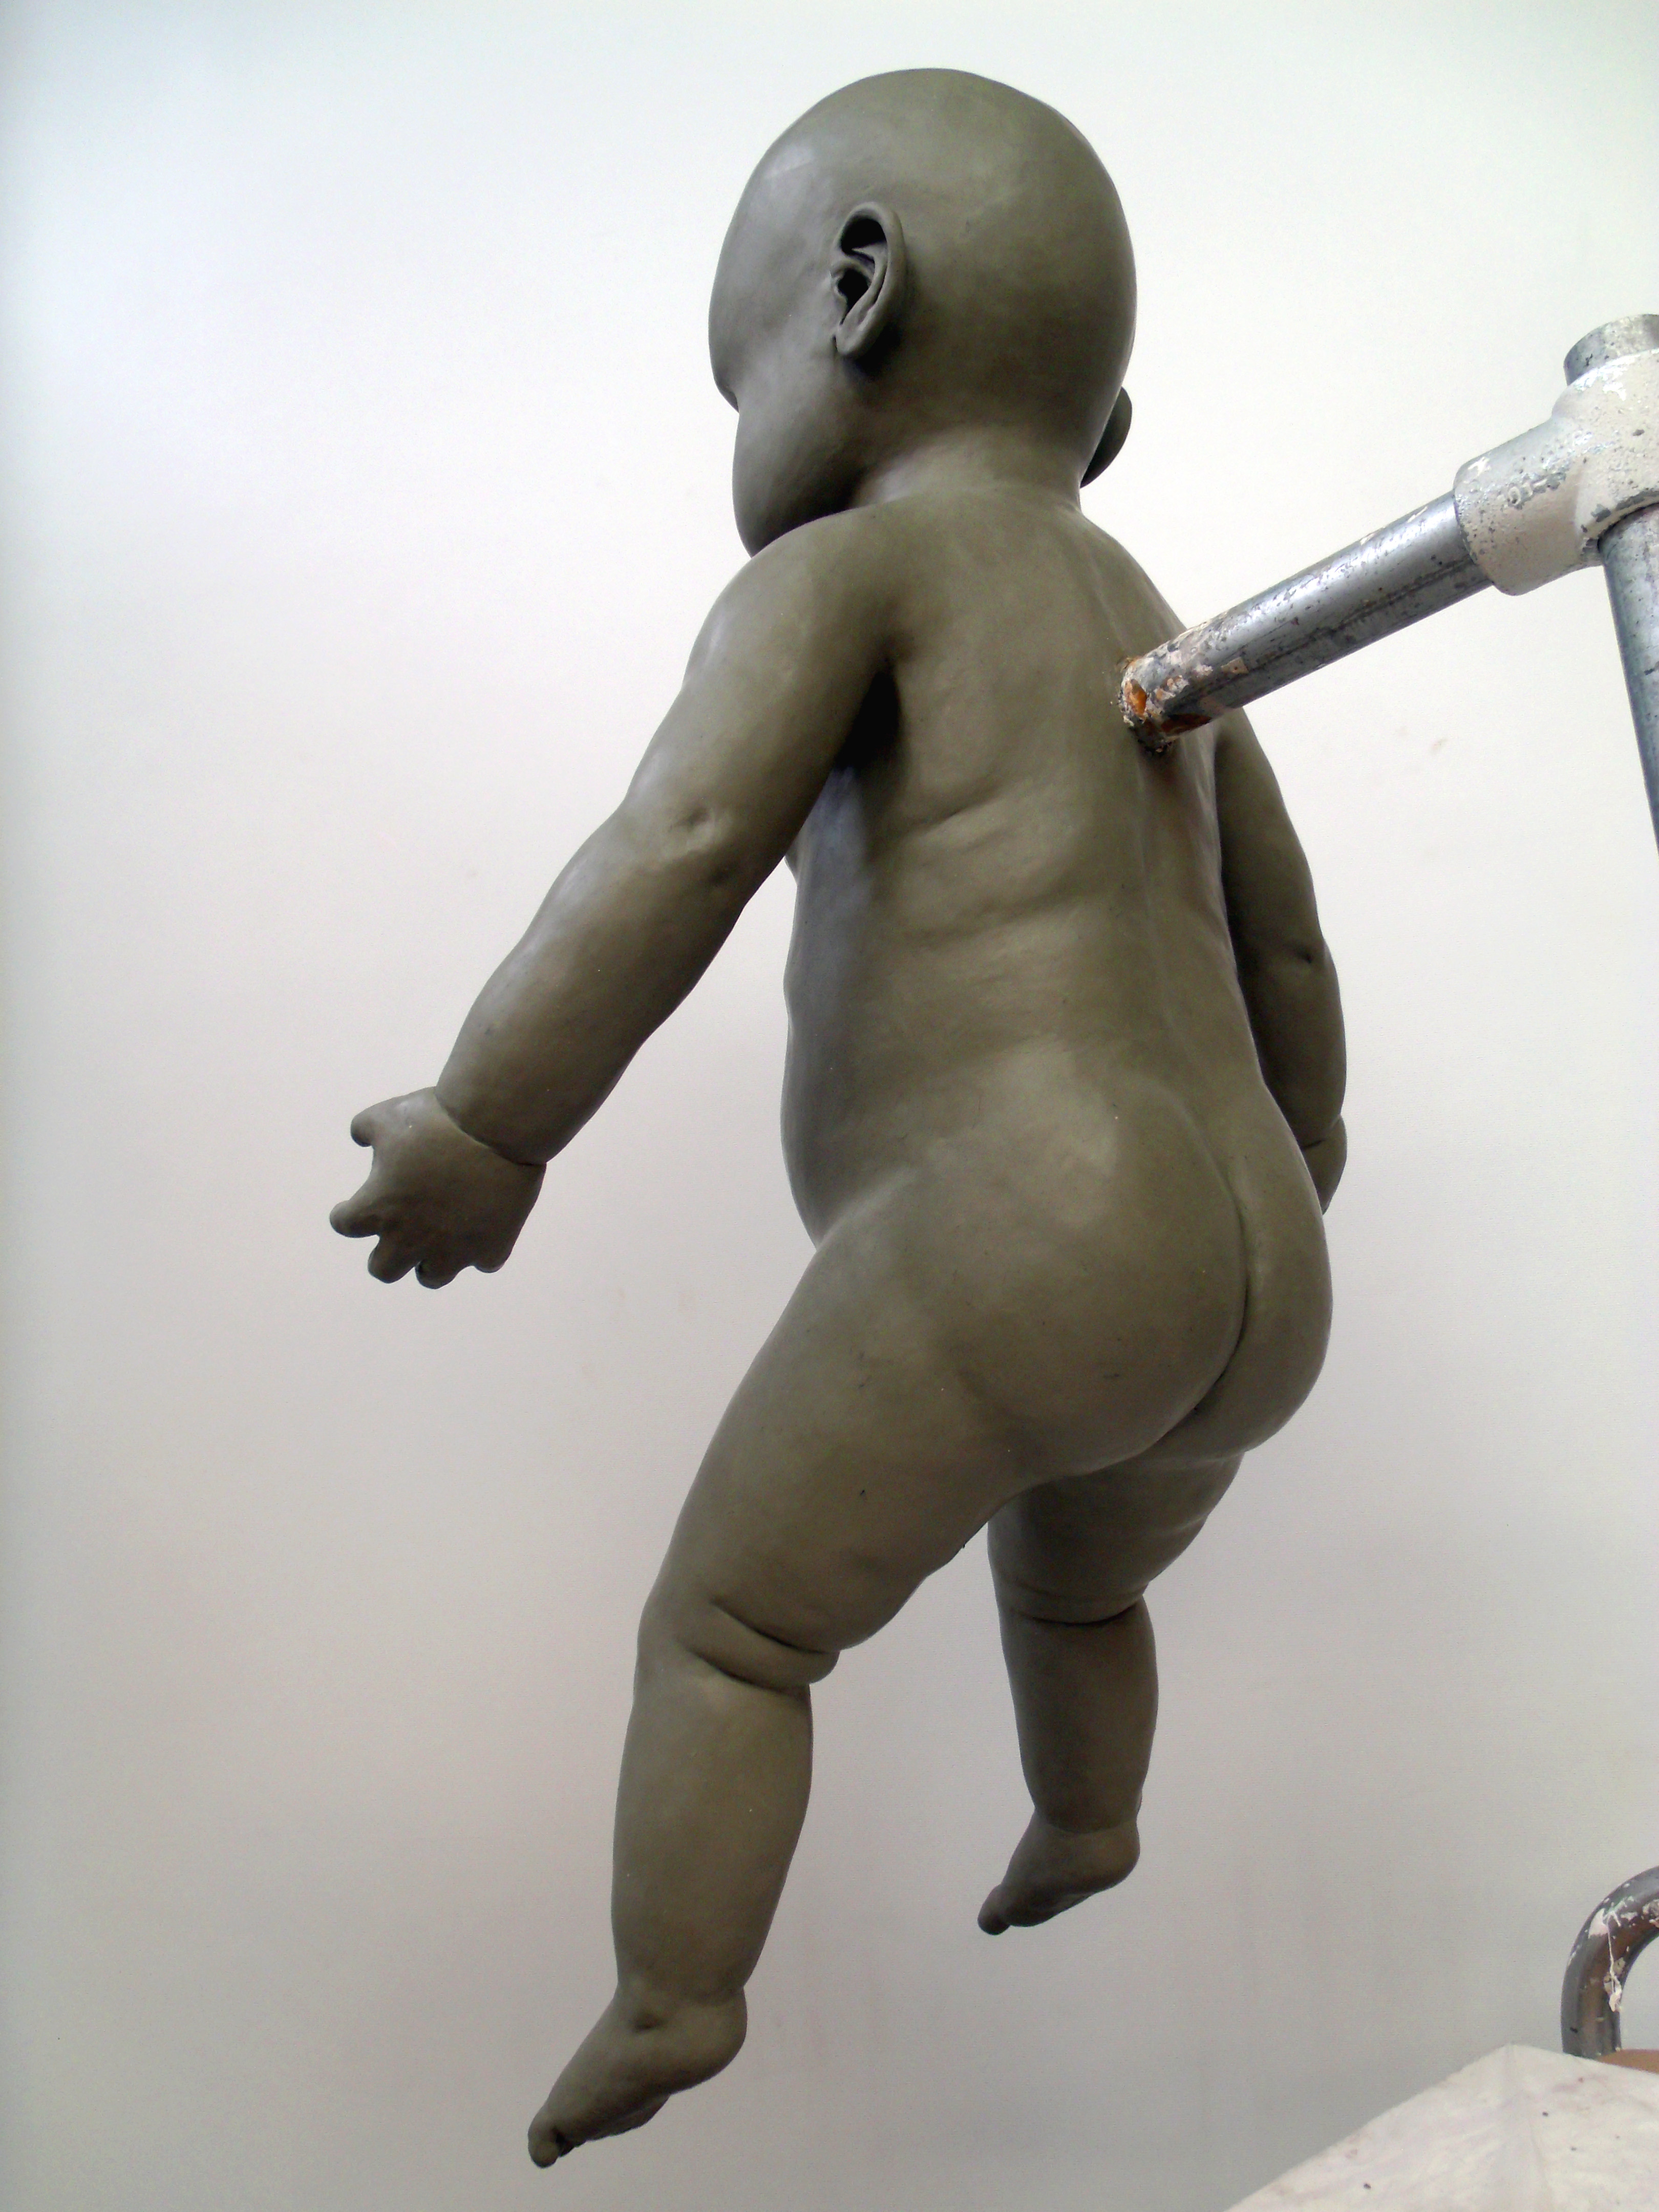 Final changeling baby full body sculpt